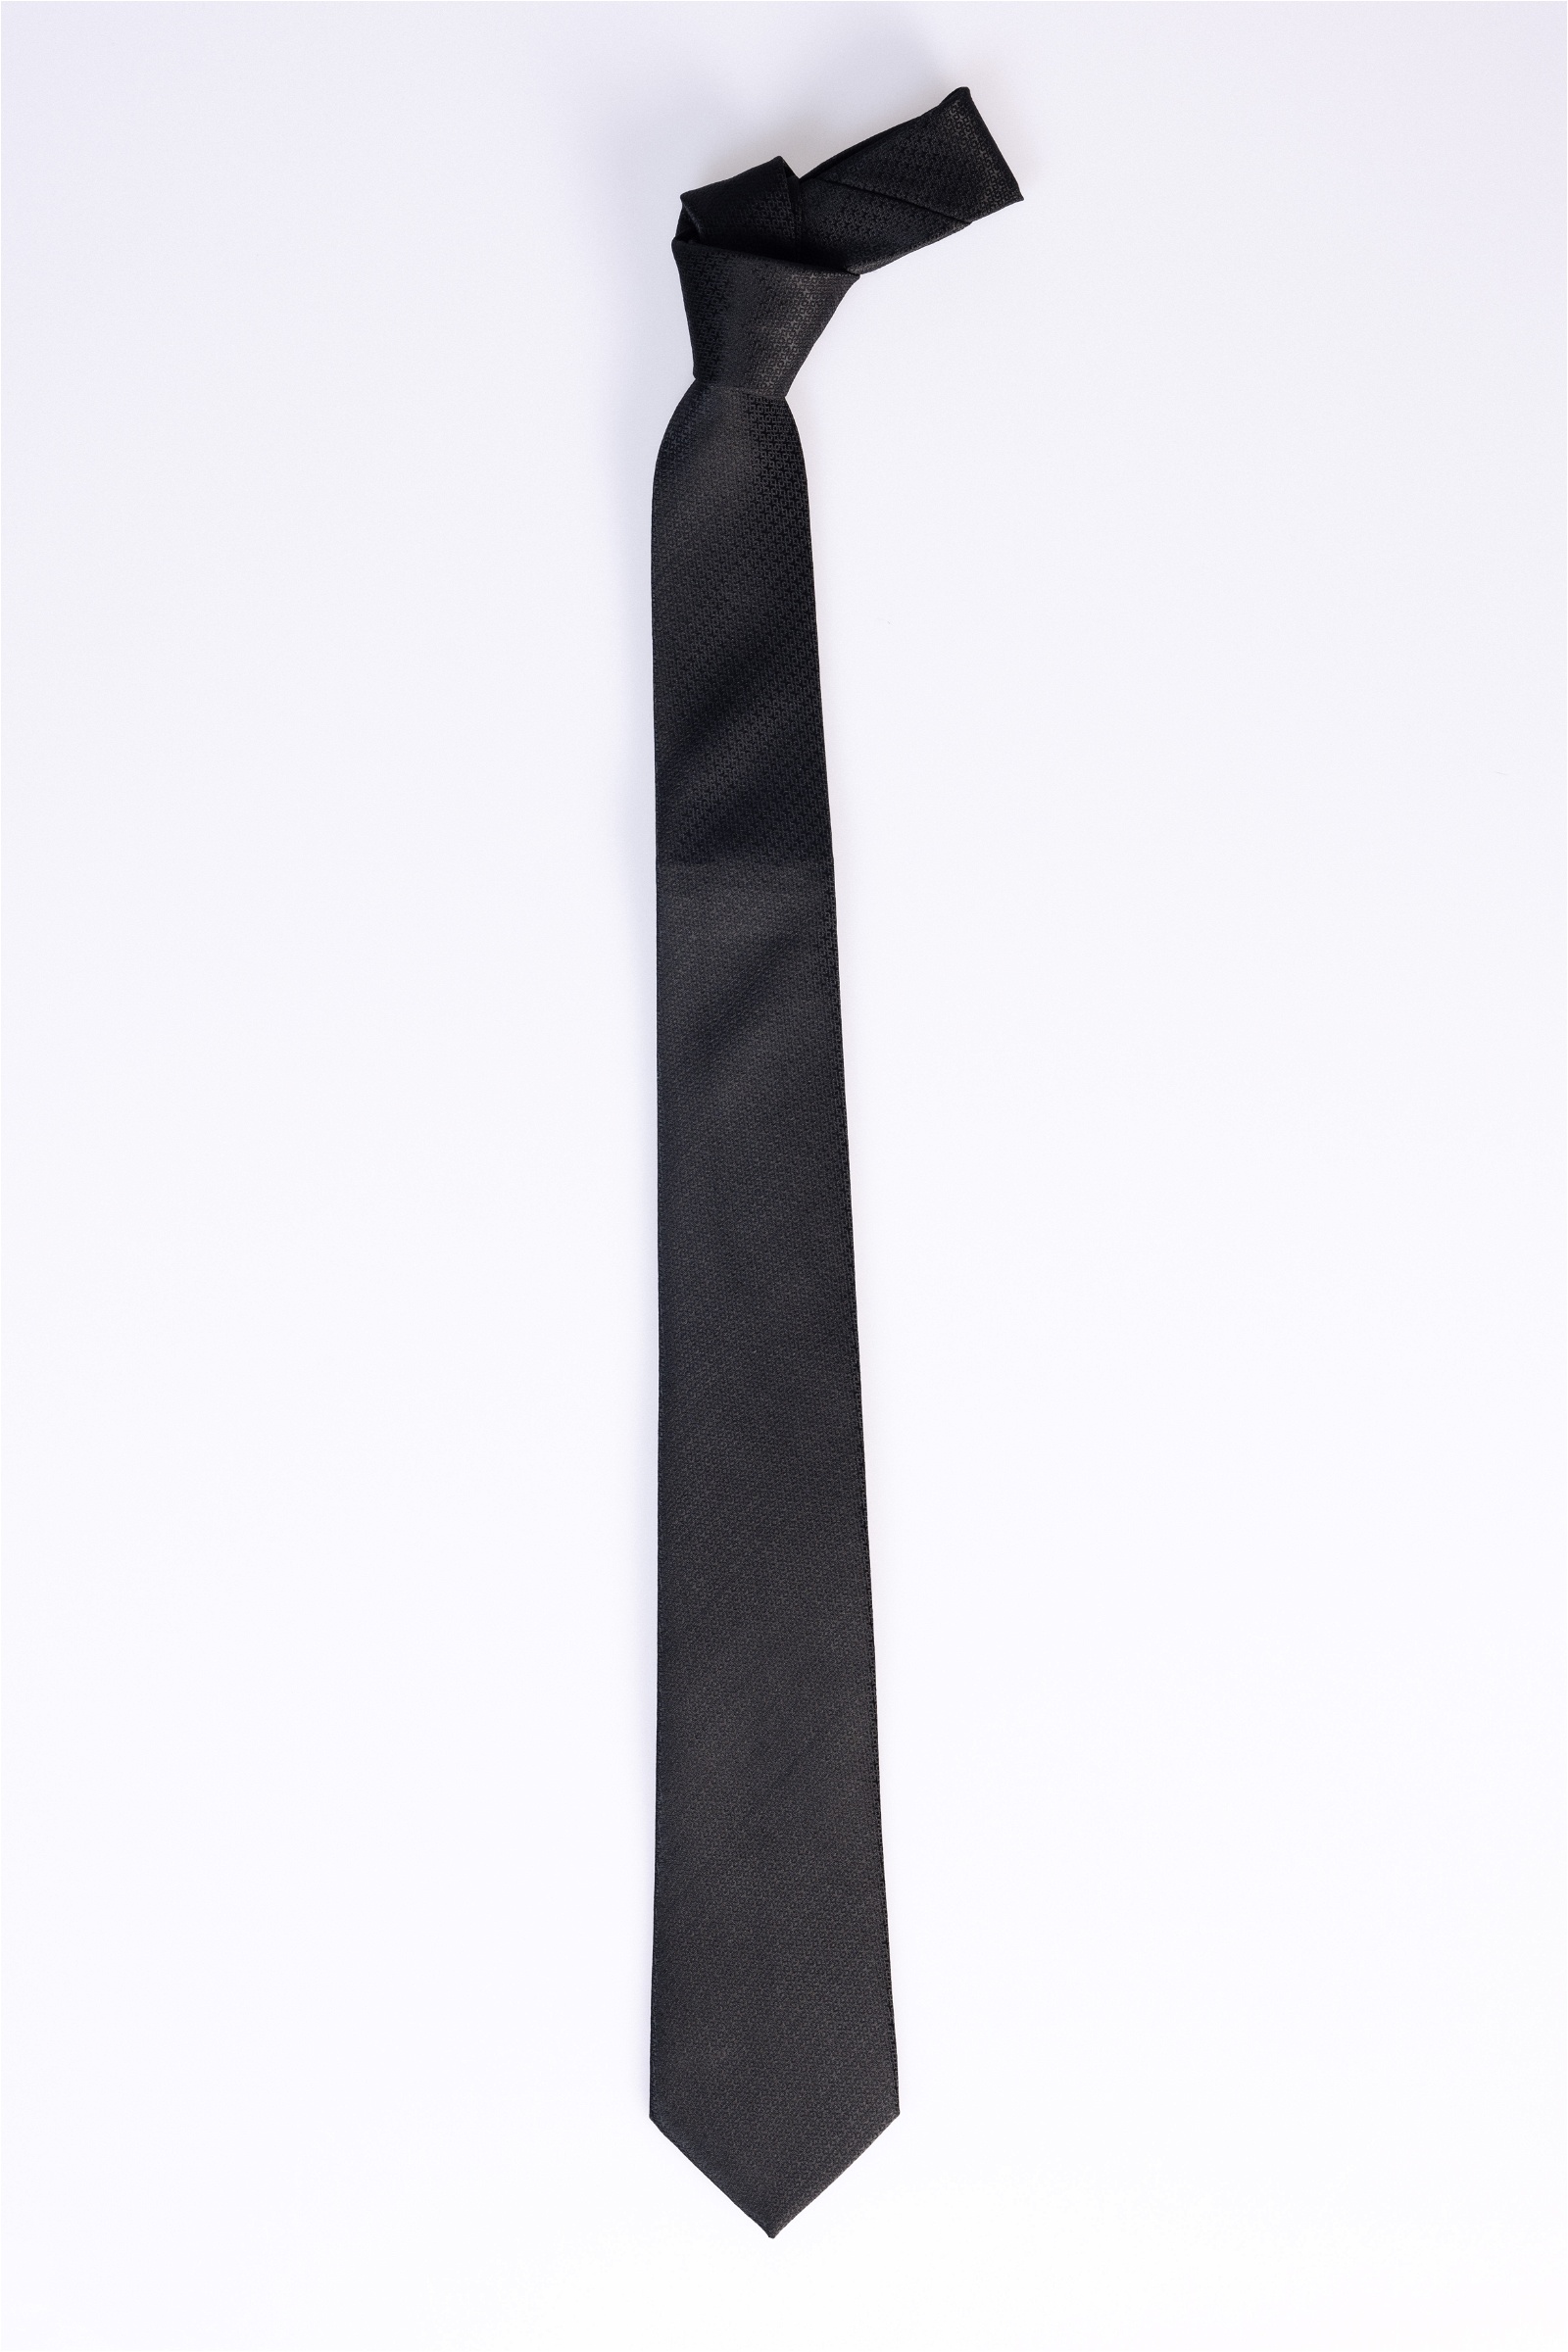  Чёрный галстук